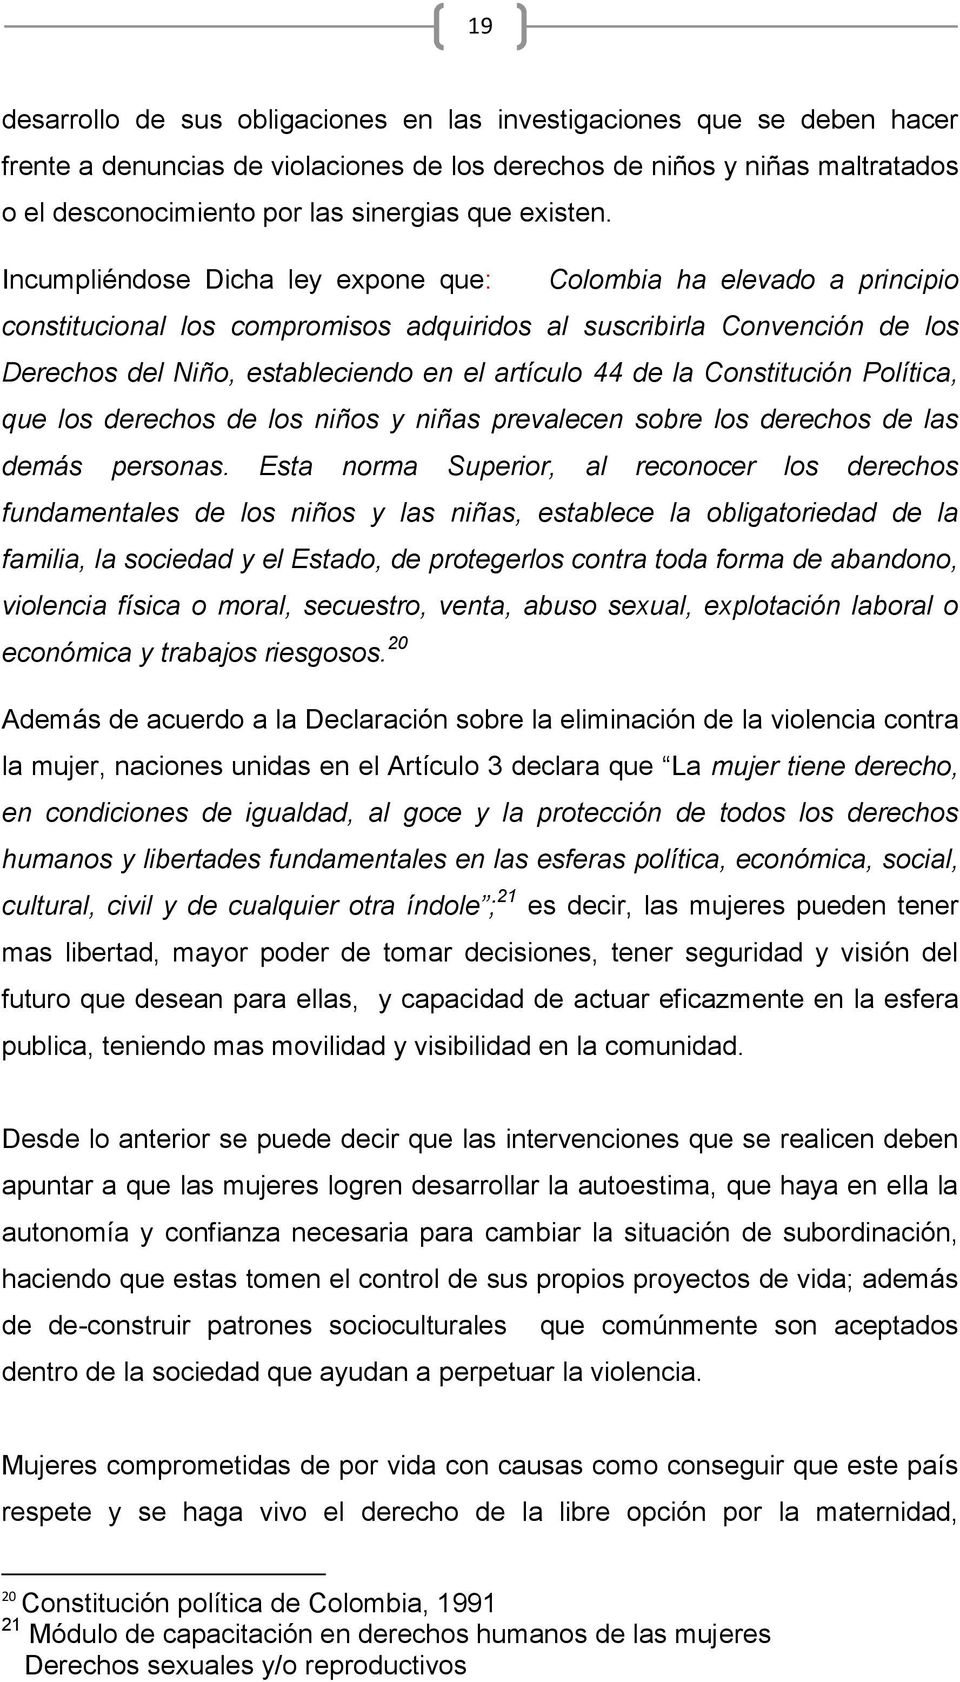 Incumpliéndose Dicha ley expone que: Colombia ha elevado a principio constitucional los compromisos adquiridos al suscribirla Convención de los Derechos del Niño, estableciendo en el artículo 44 de